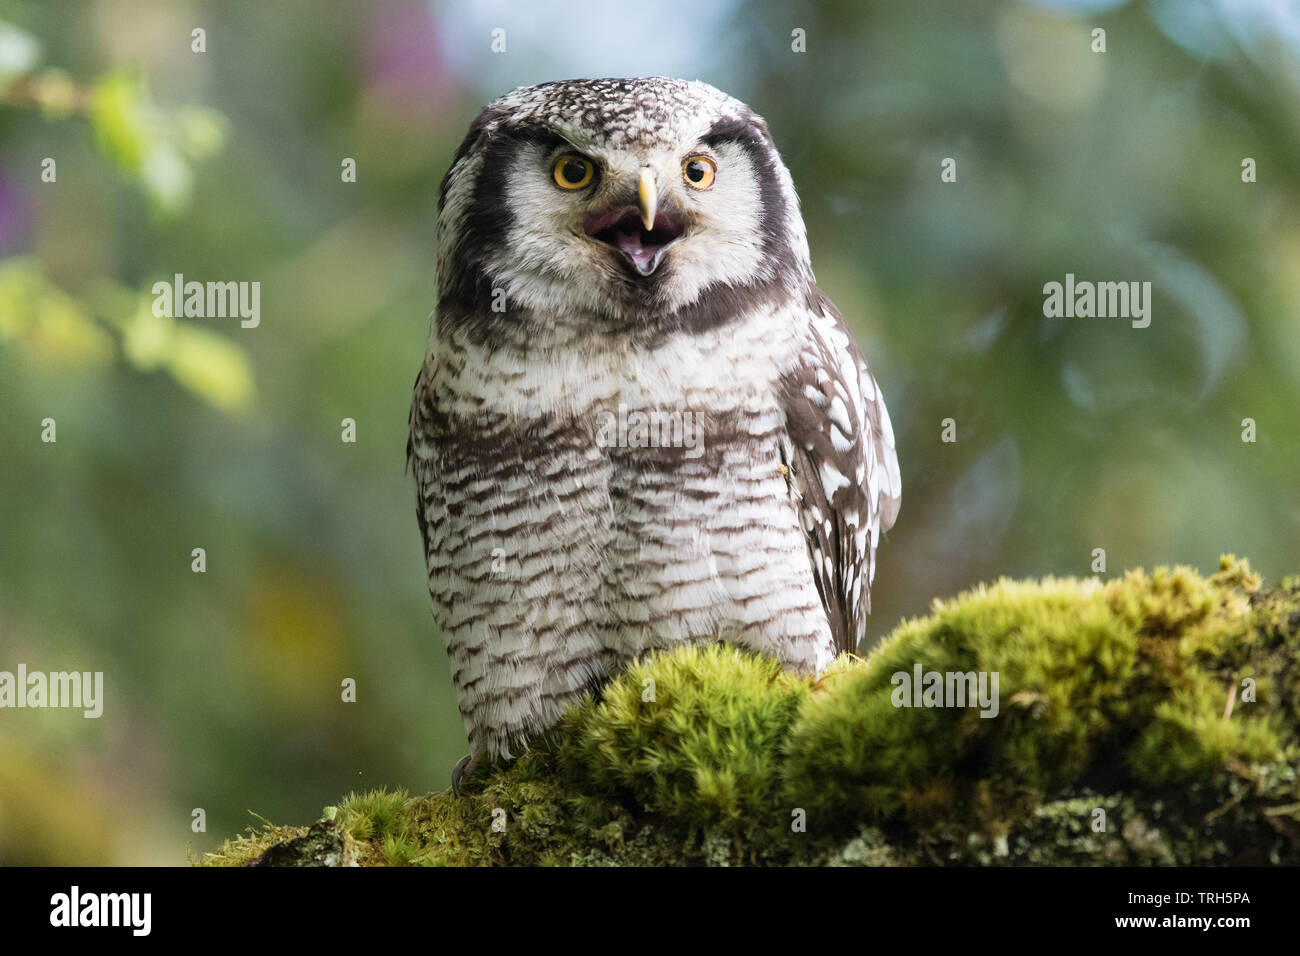 Northern Hawk Owl-Surnia ulula - kreischende mit offenem Schnabel - von in Gefangenschaft gehaltenen Vögeln an strathblane Falknerei, Schottland, Großbritannien Stockfoto